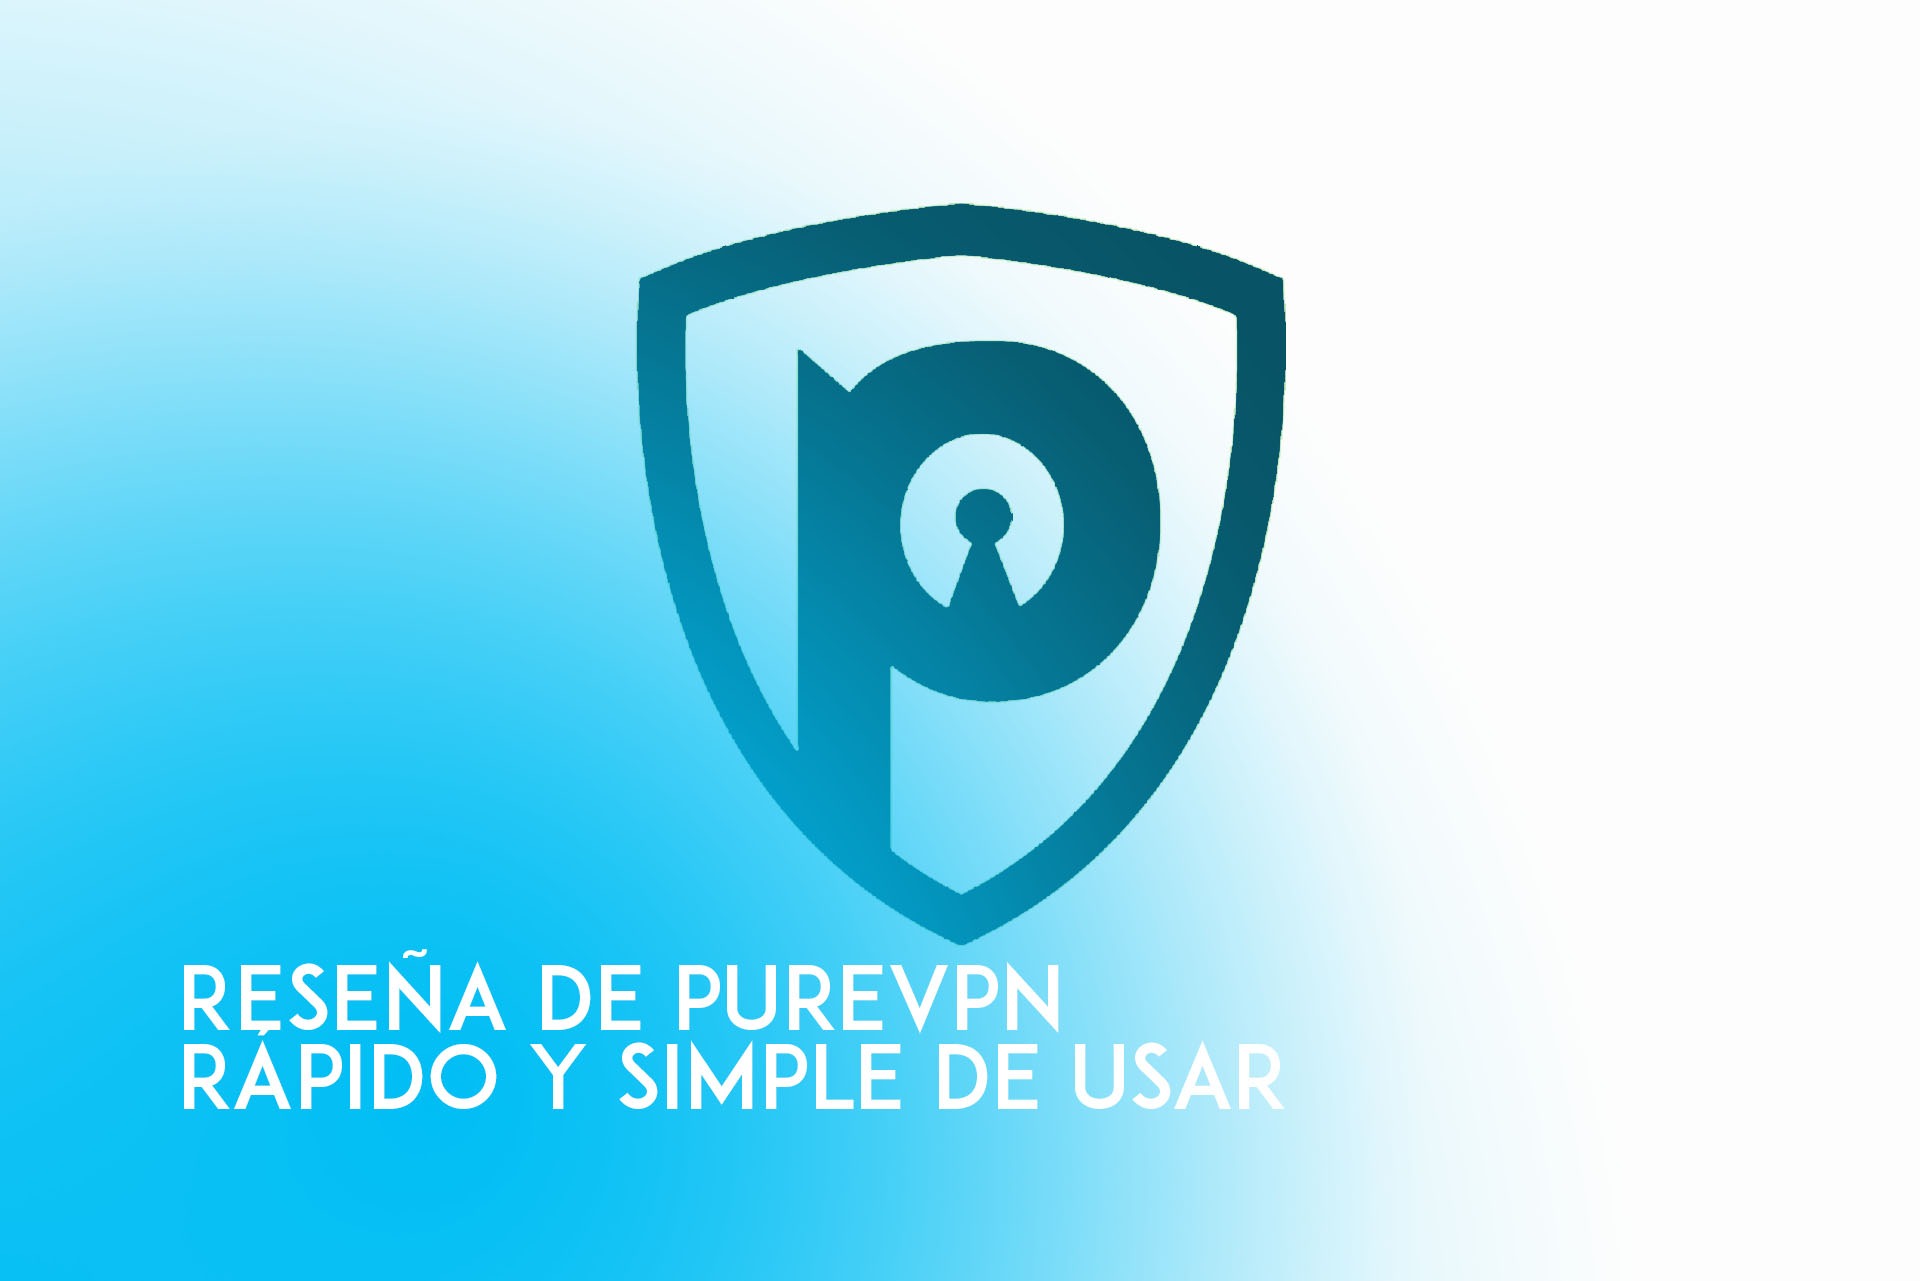 purevpn reseña una vpn simple de usar